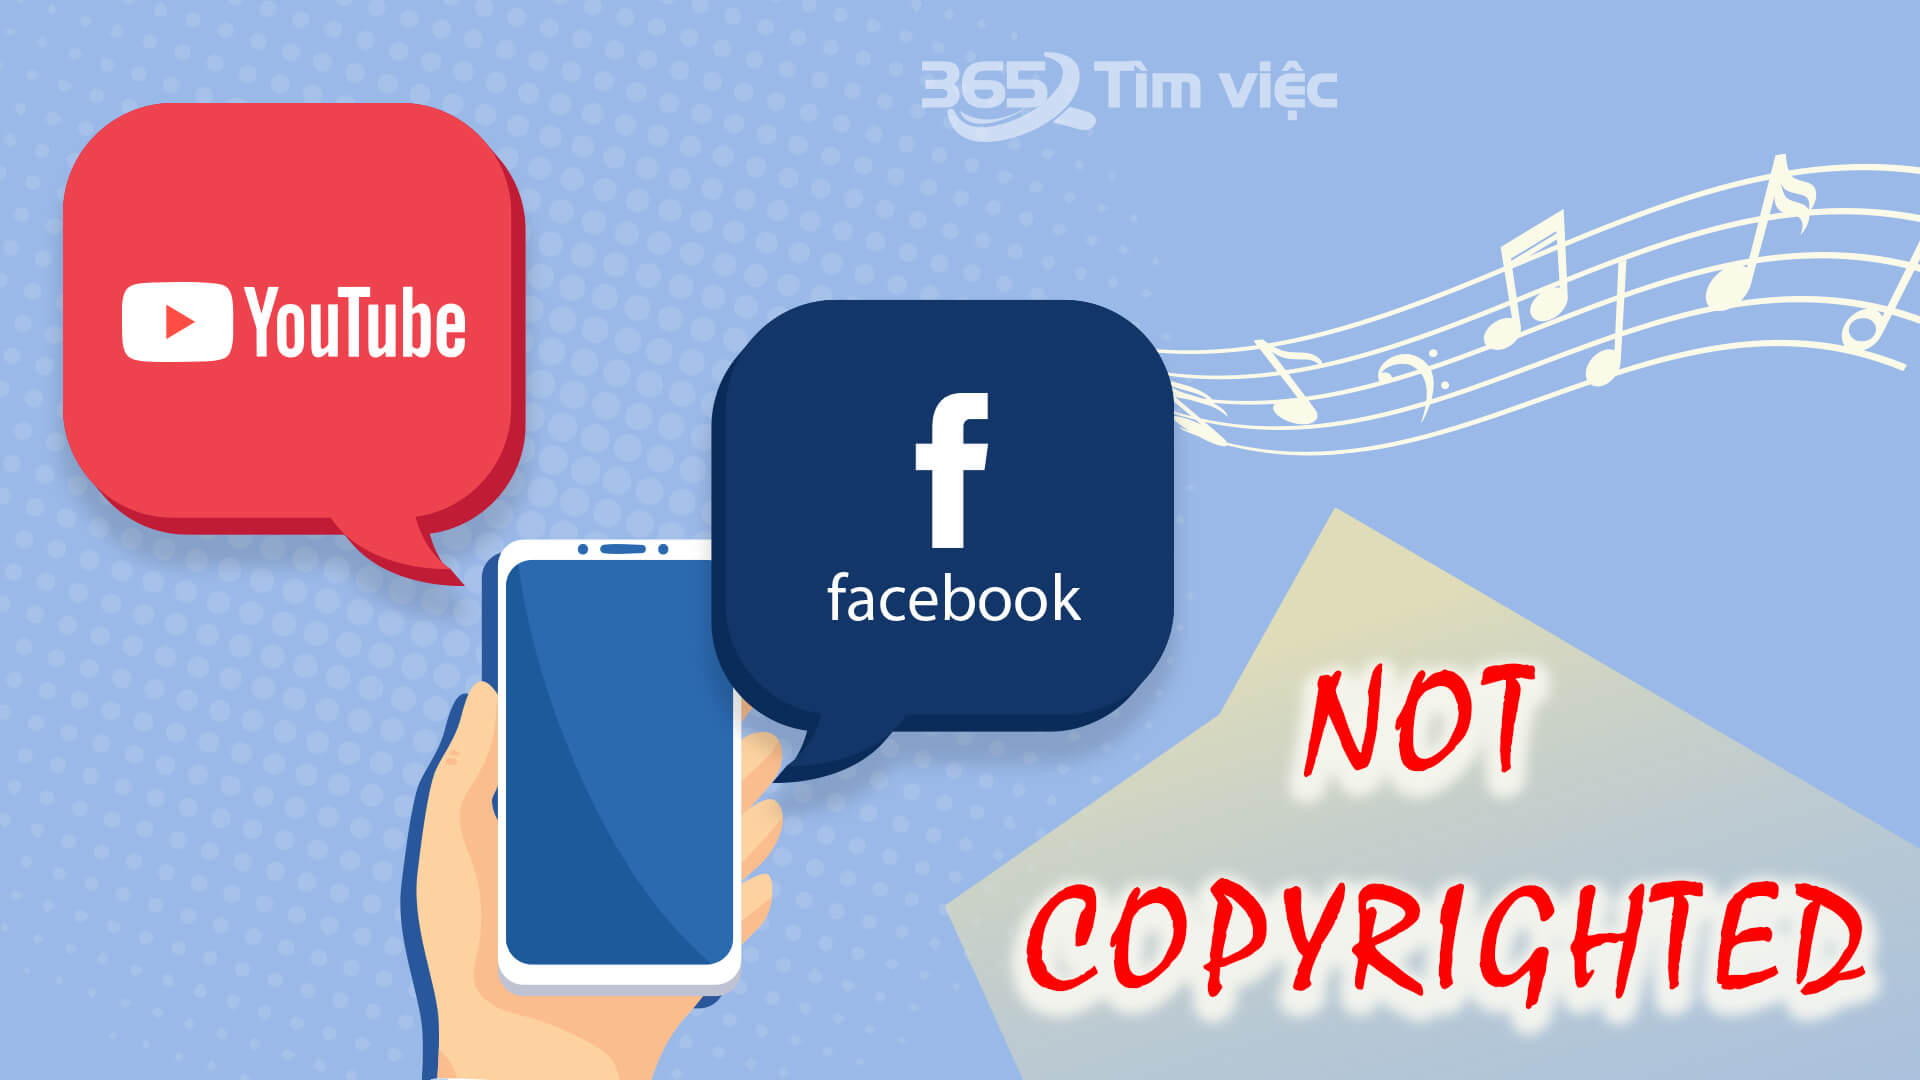 Nắm rõ vấn đề bản quyền video lên Youtube và Facebook - cách “lách luật” bản quyền cơ bản nhất